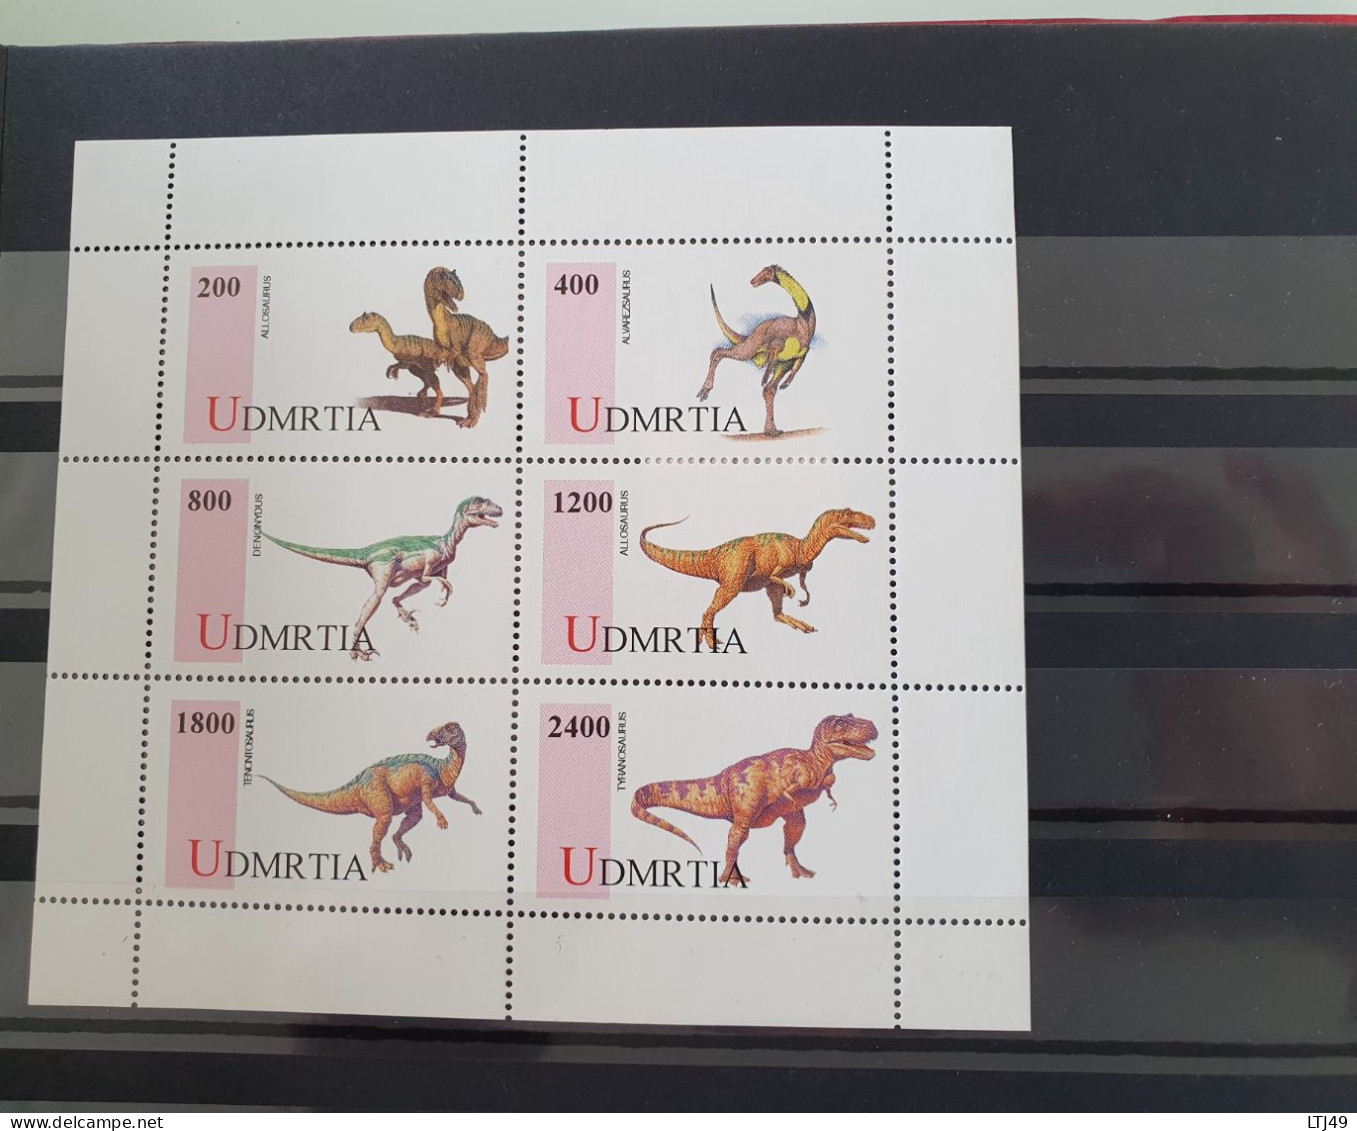 Lot de 3 albums de timbres( +2175 timbres) exceptionnel sur les thème des dinosaures/ Animaux préhistoriques